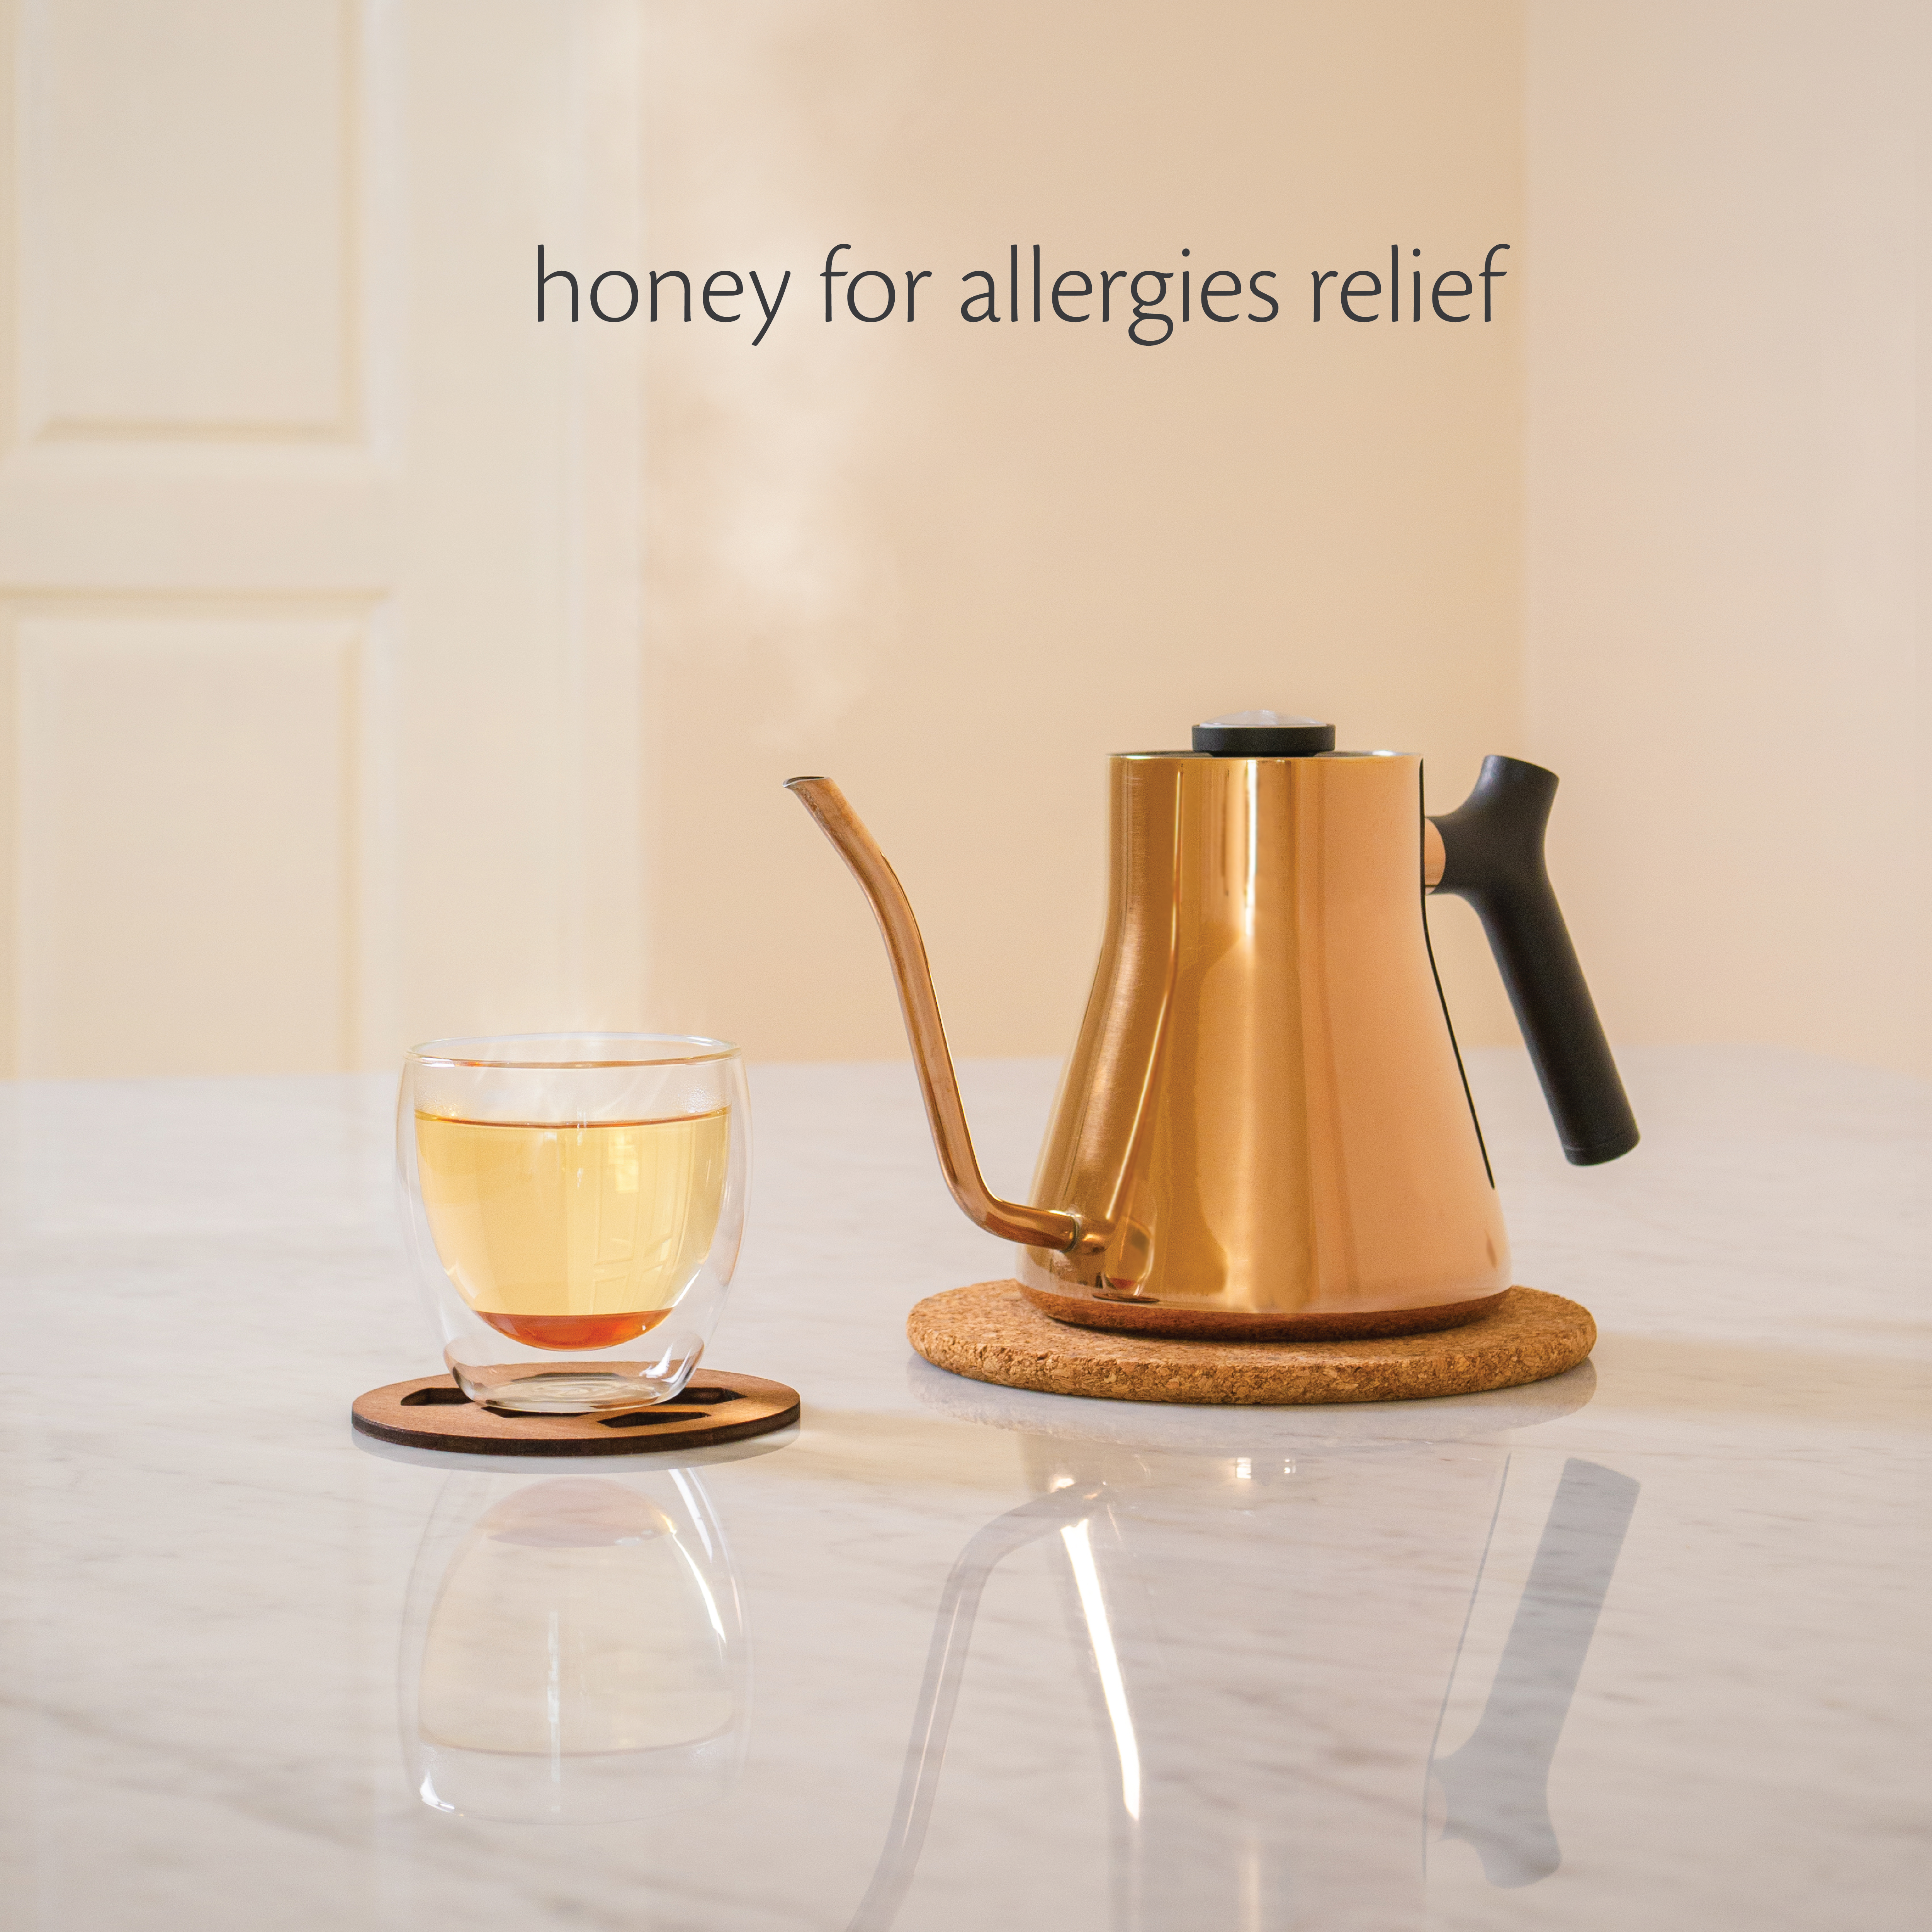 honey for allergies